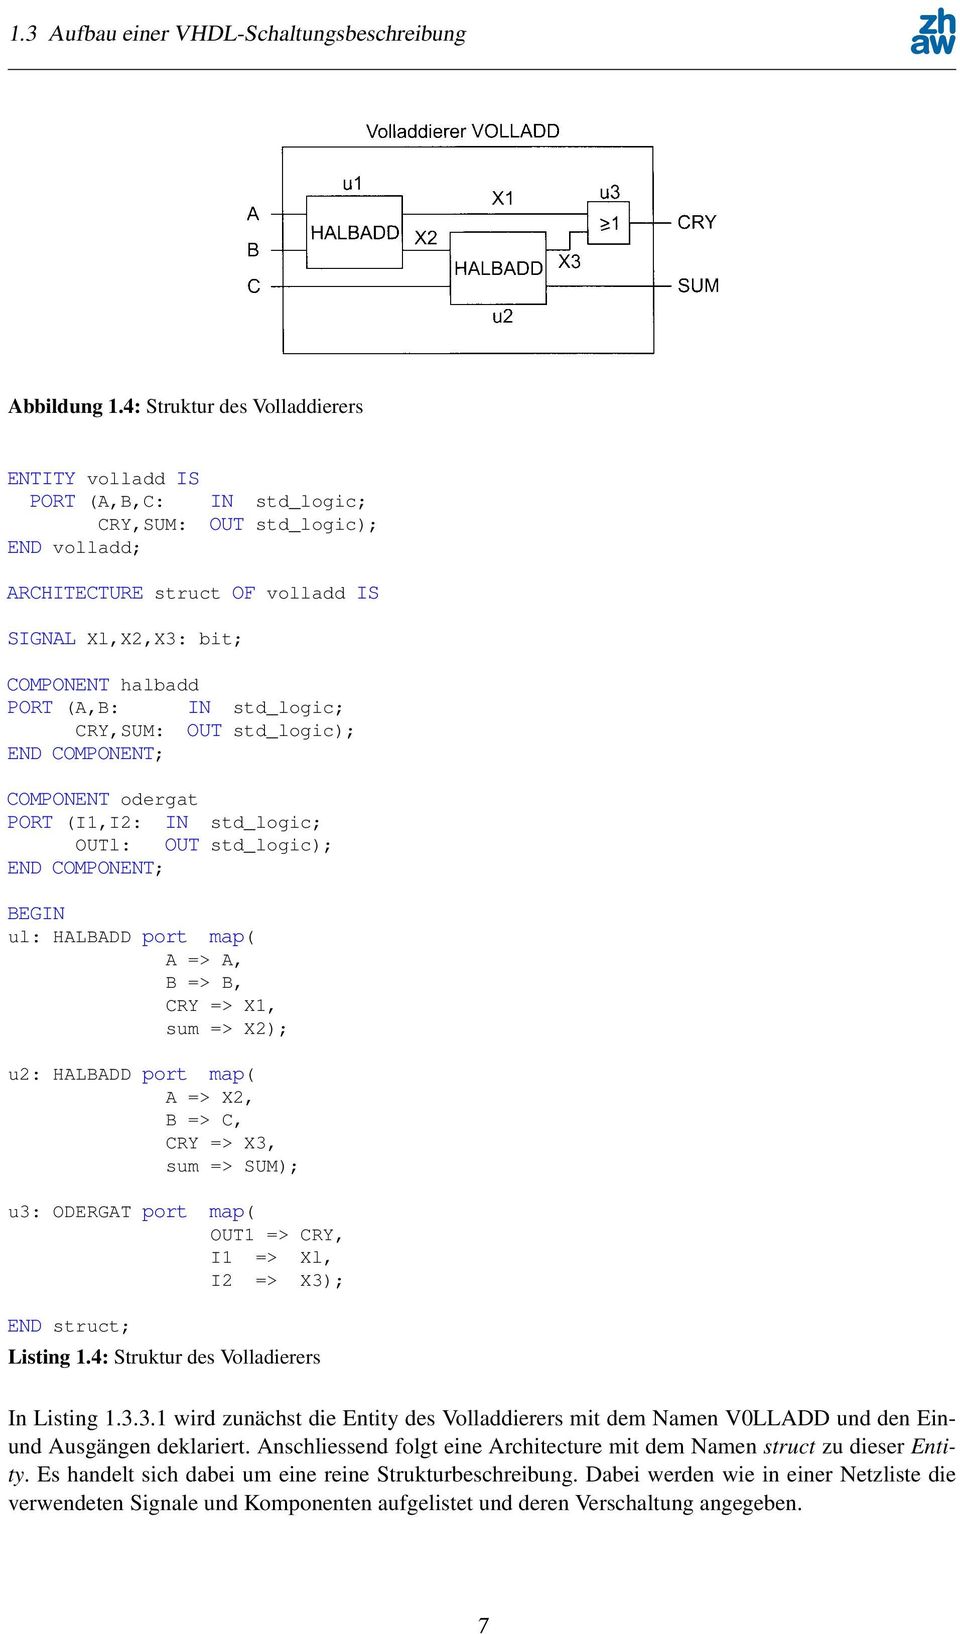 Das entsprechende VHDL-Modell ist als Listing 4 abgedruckt. A B a Volladdierer VOLLADD Abb. 5.3: Struktts Lles Volladdiercrs Abbildung 1.